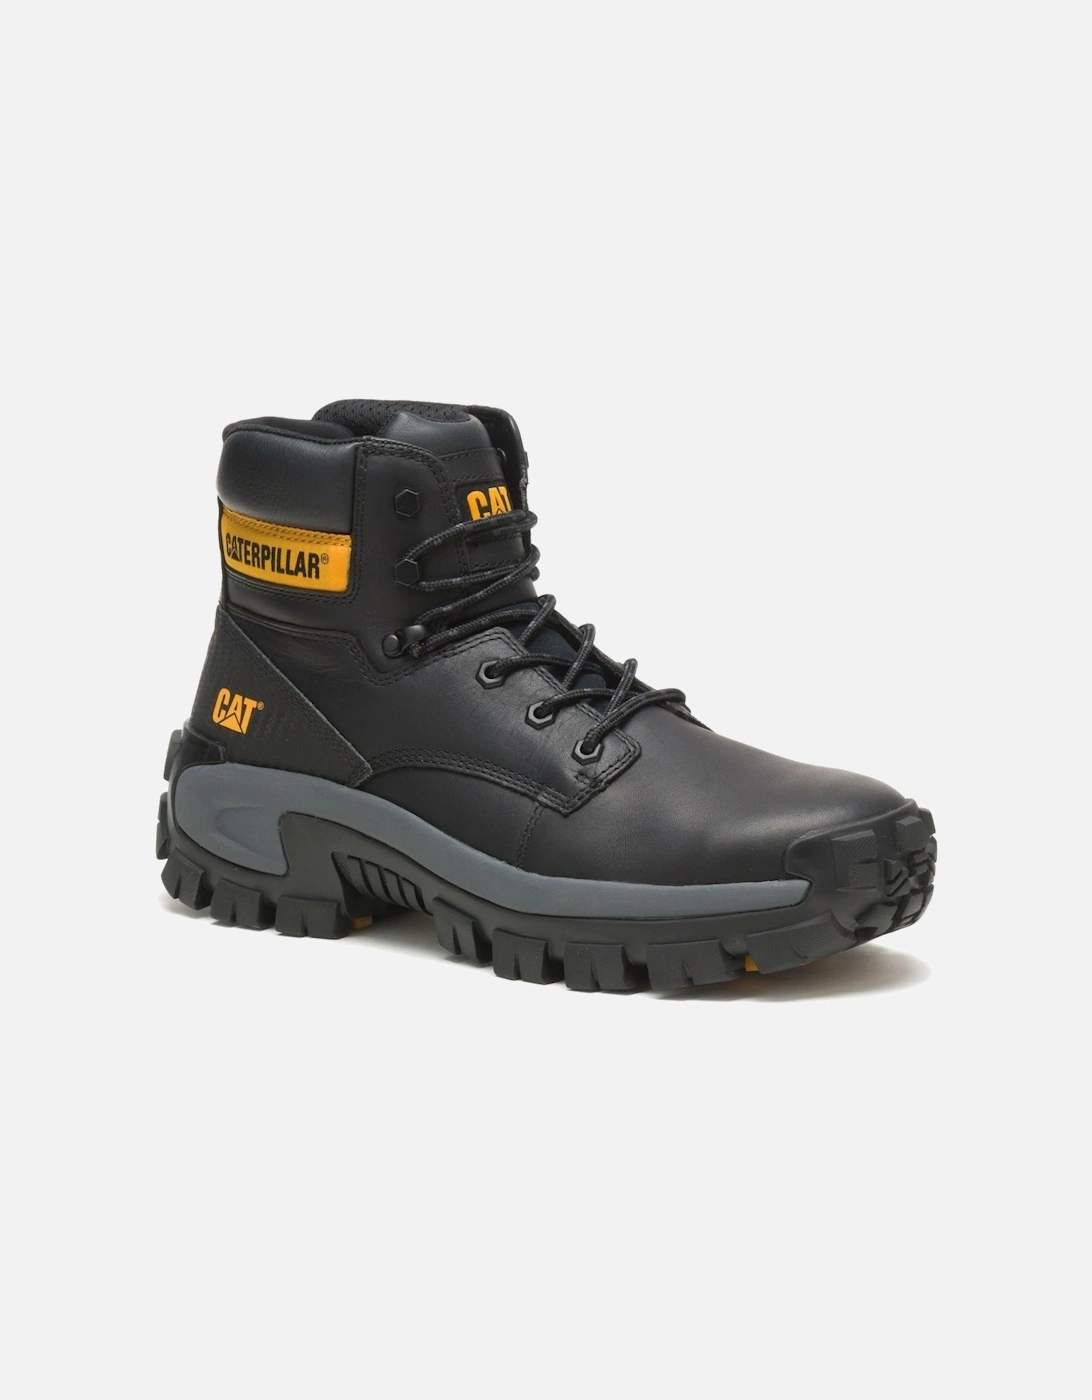 Invader Hiker Mens Safety Boots, 7 of 6